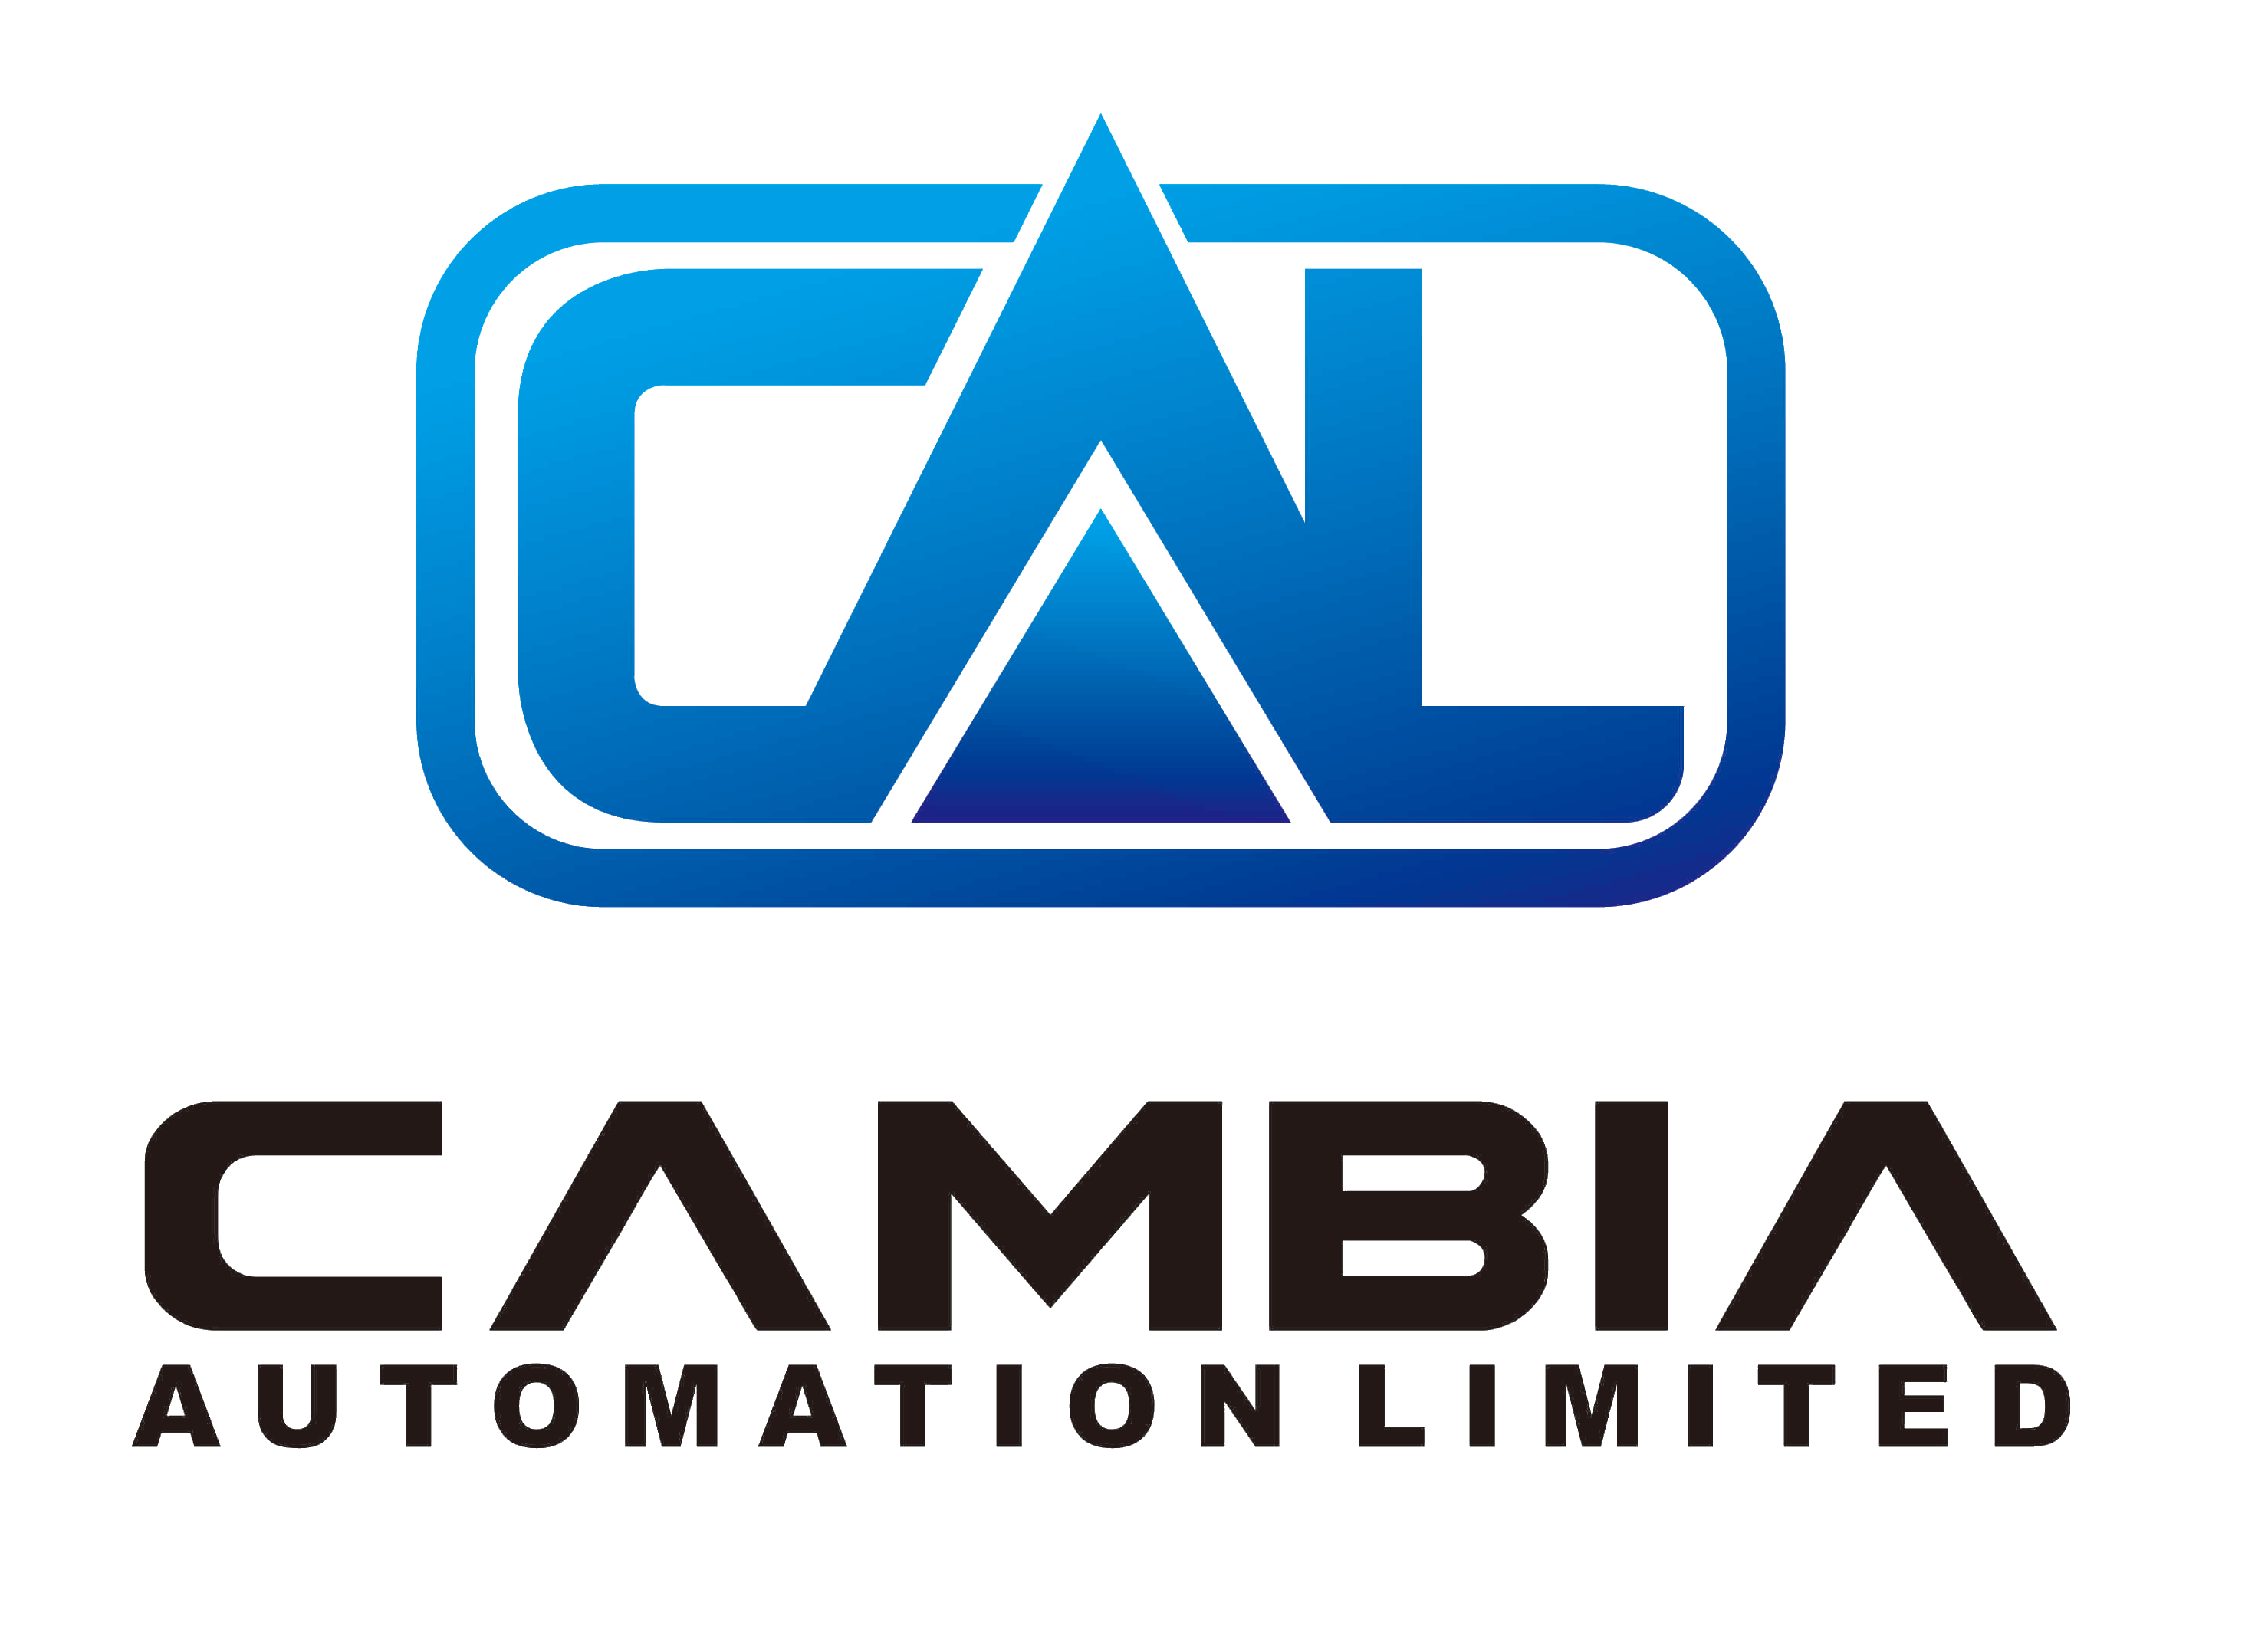 Cambia Automation Limited, Cambia Automation Limited